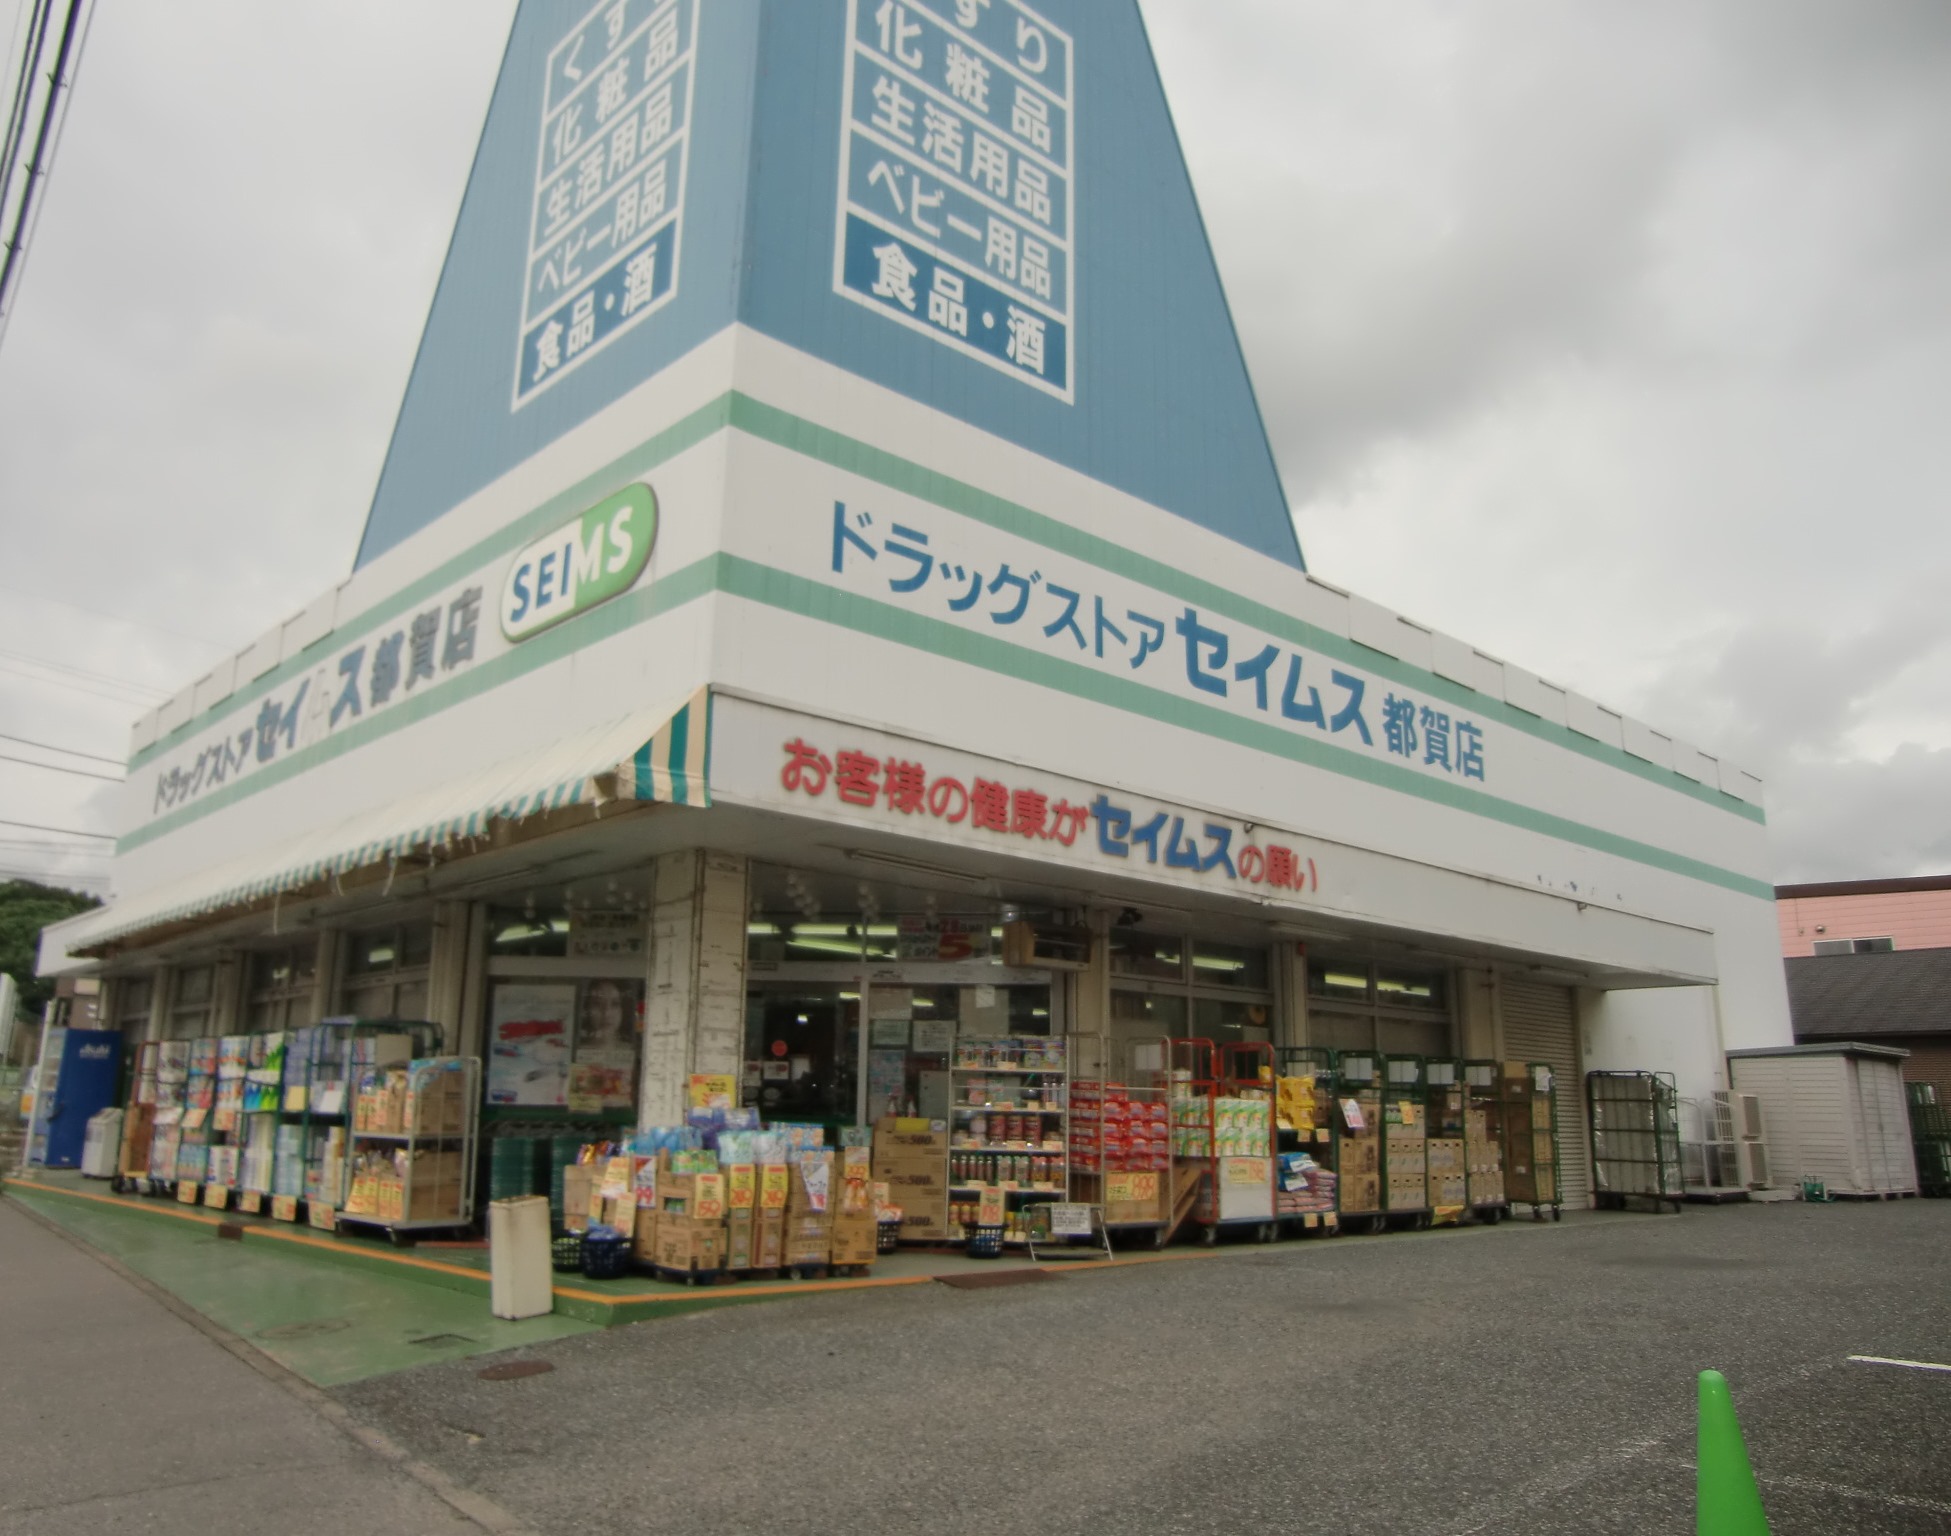 Dorakkusutoa. Drag Seimusu Tsuga shop 546m until (drugstore)